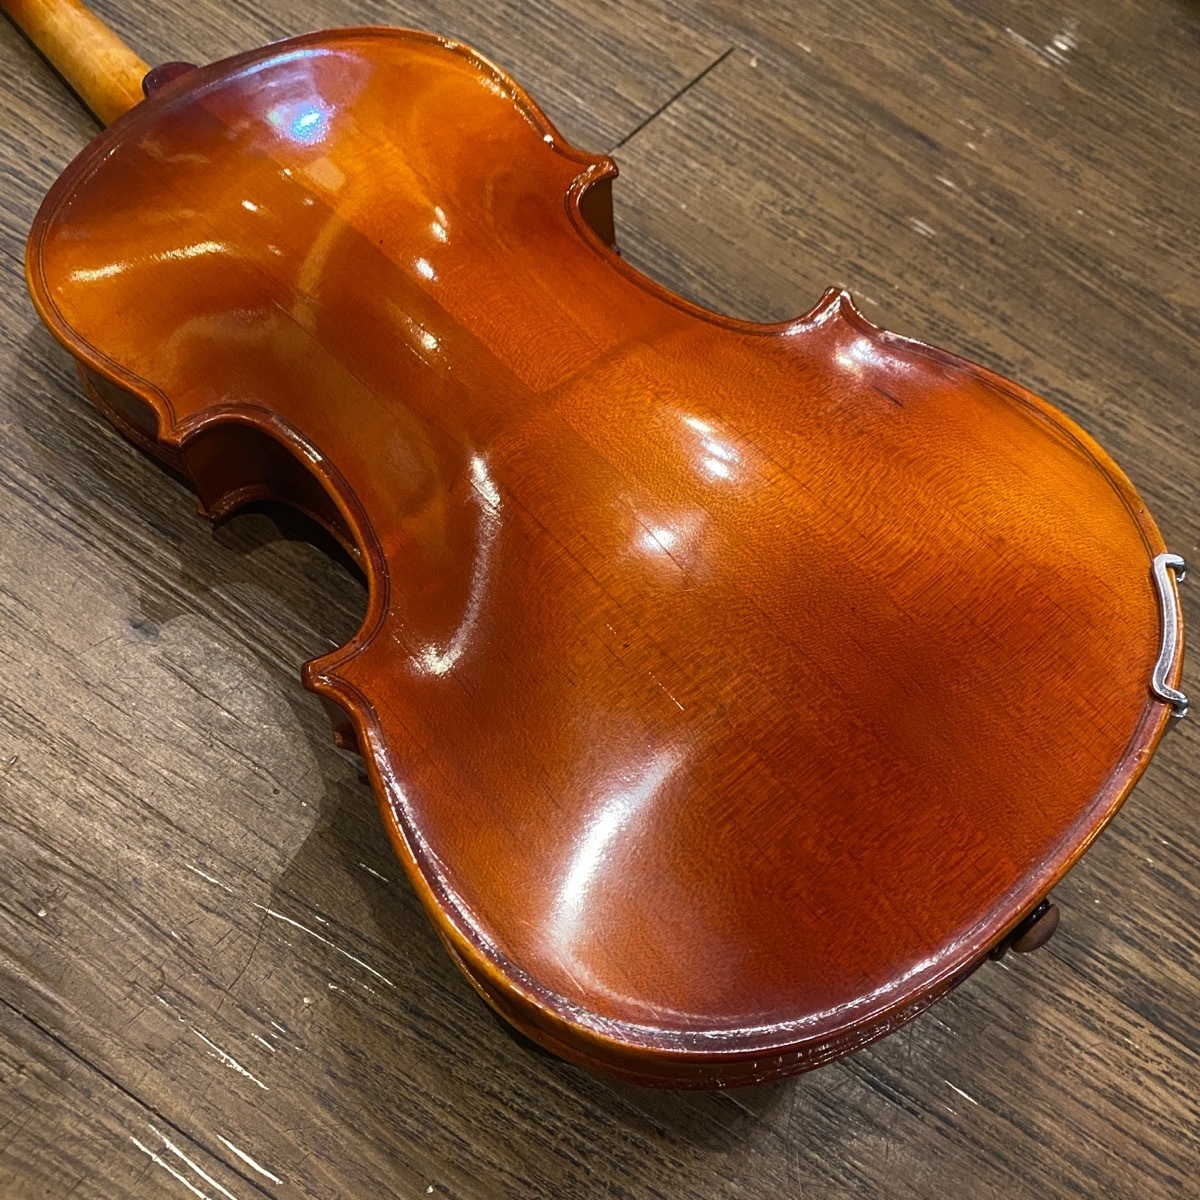 小提琴 MV-006 4/4 String Instrument バイオリン -GrunSound-x125-_画像7